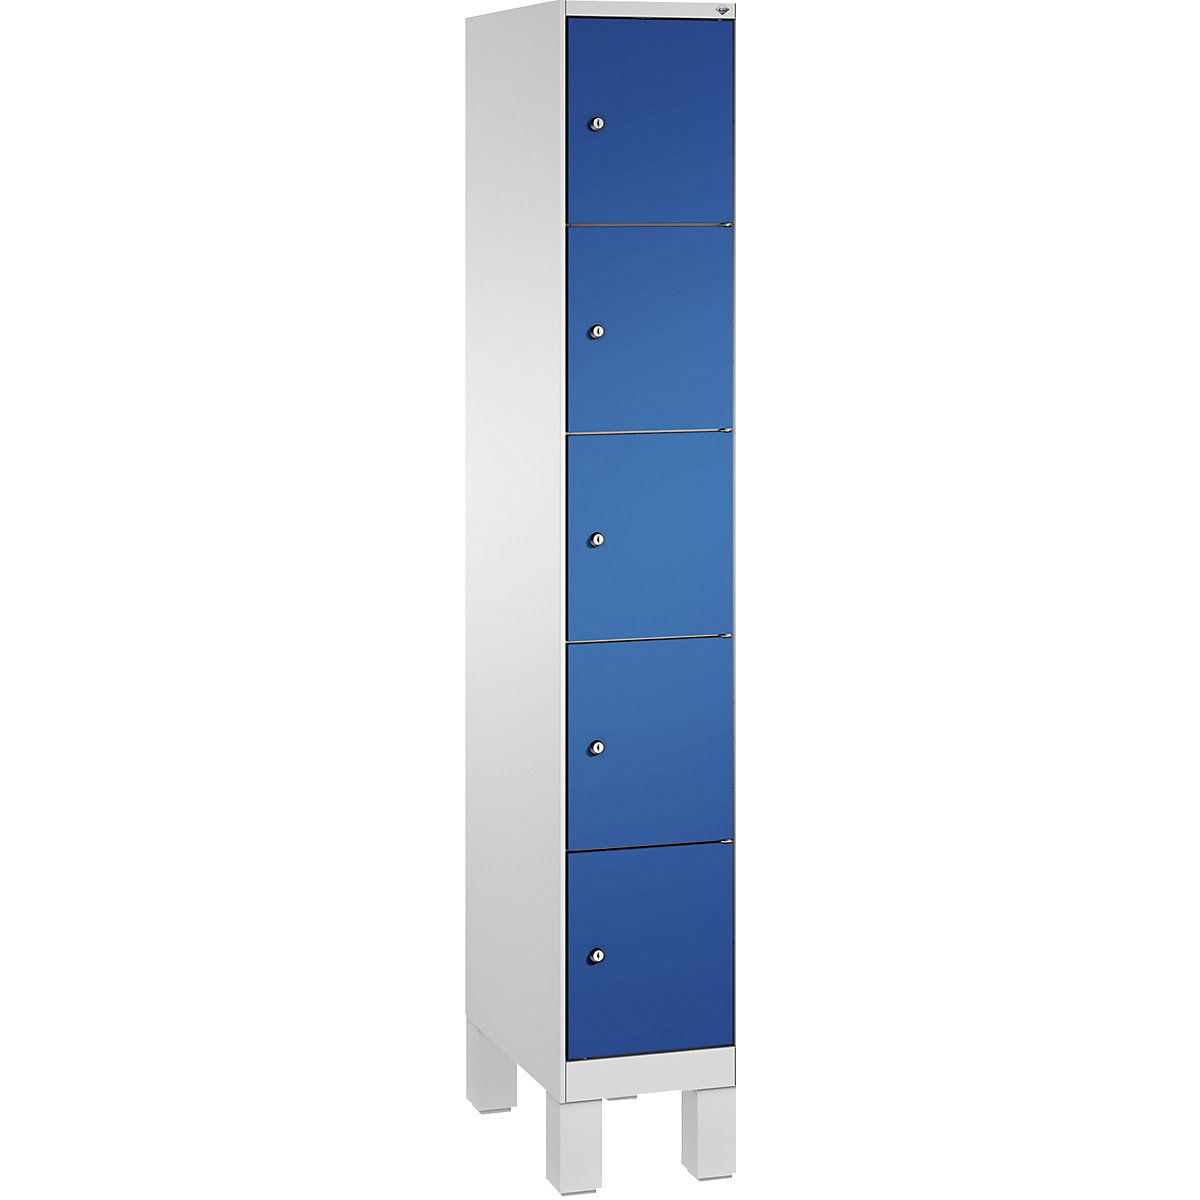 Armoire à casiers sur pieds EVOLO – C+P, 1 compartiment, 5 casiers, largeur compartiment 300 mm, gris clair / bleu gentiane-17